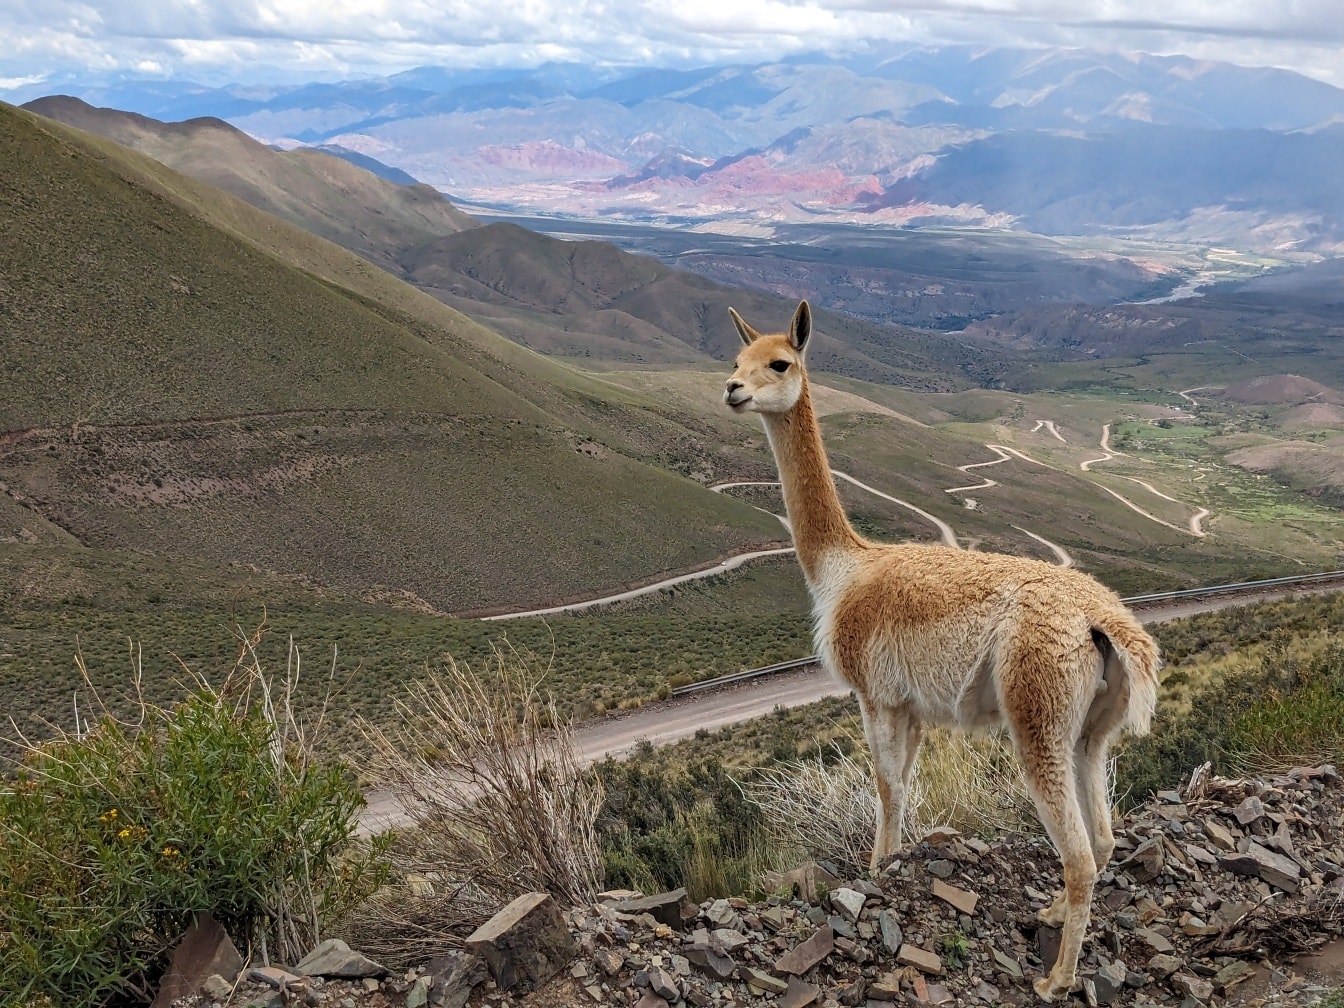 Güney Amerika’daki Vicuña hayvan (Lama vicugna) , And Dağları’ndaki tepenin üzerinde duruyor